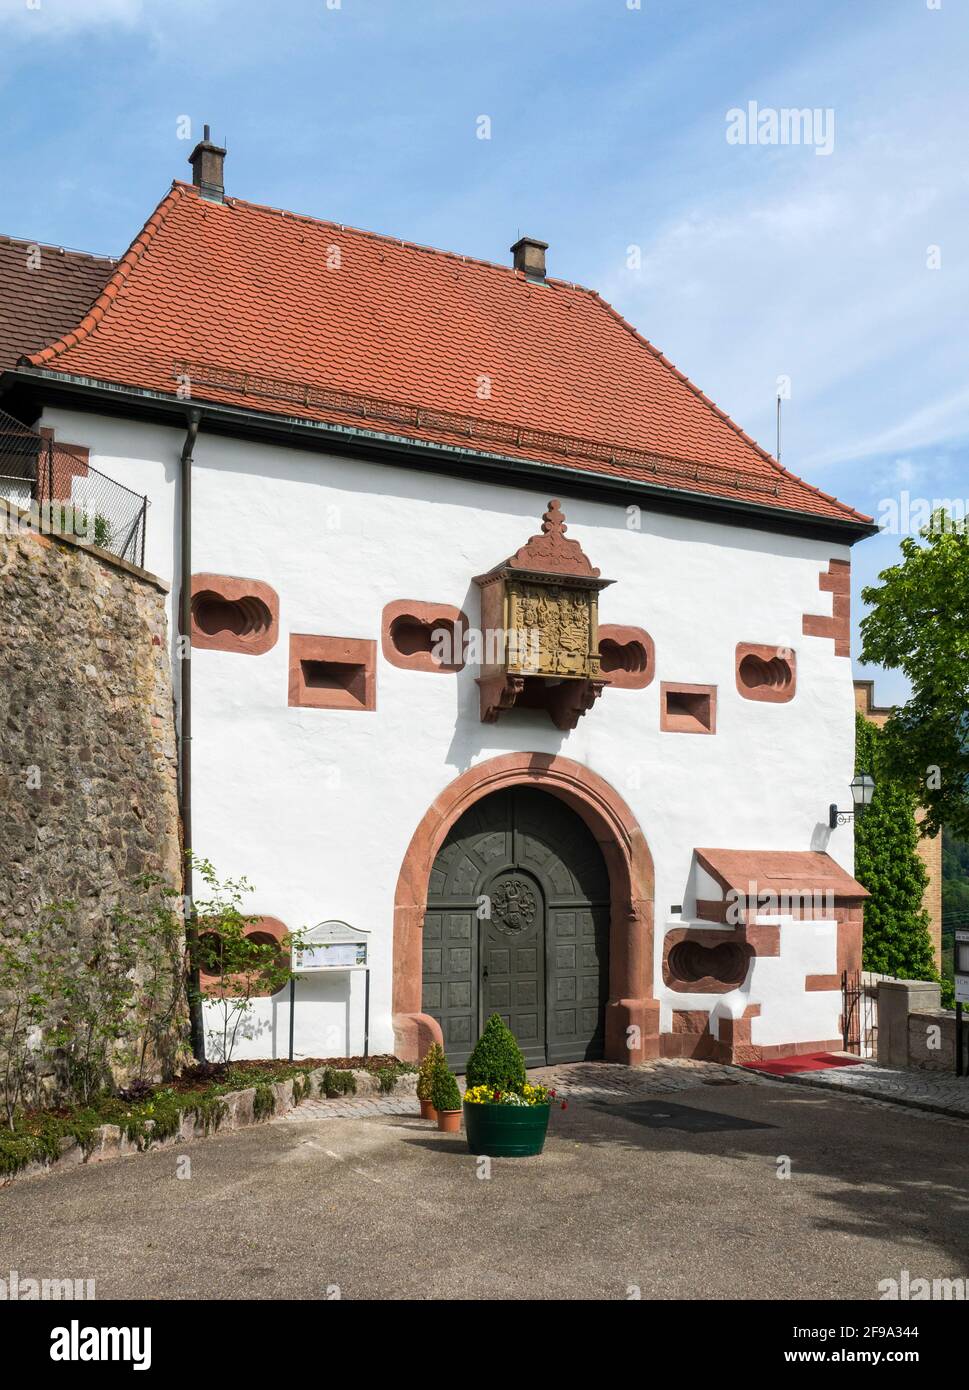 Germania, Baden-Wuerttemberg, Gernsbach - Obertsrot, gatehouse con finestra della baia di weir a Schloss Eberstein anche Neu-Eberstein, Neueberstein. Foto Stock